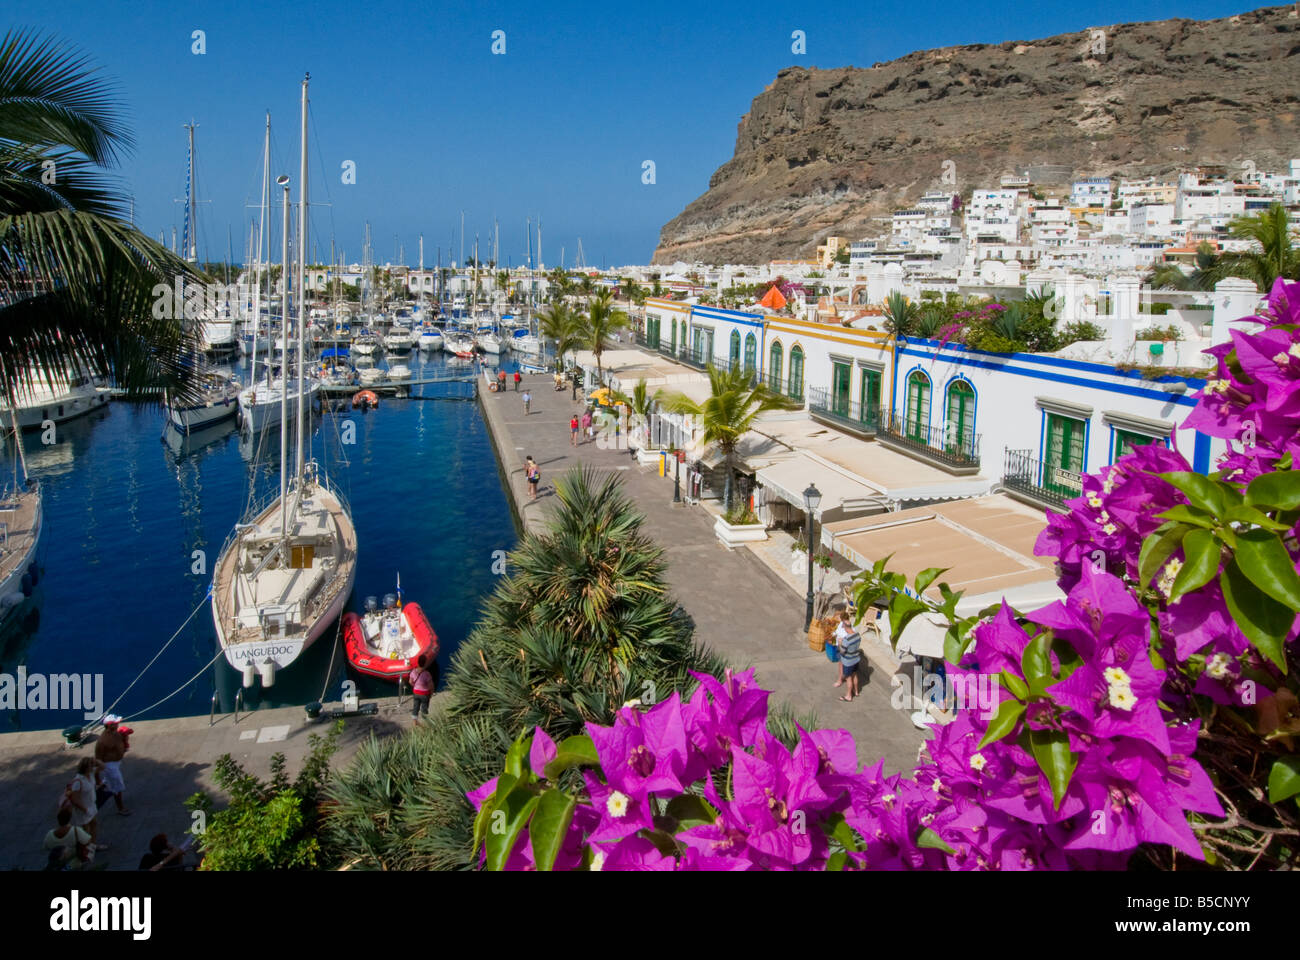 Puerto de Mogan descripción tiendas restaurantes bares vistos a través de buganvillas flores, al puerto deportivo y el paseo marítimo. Gran Canaria, Islas Canarias Foto de stock